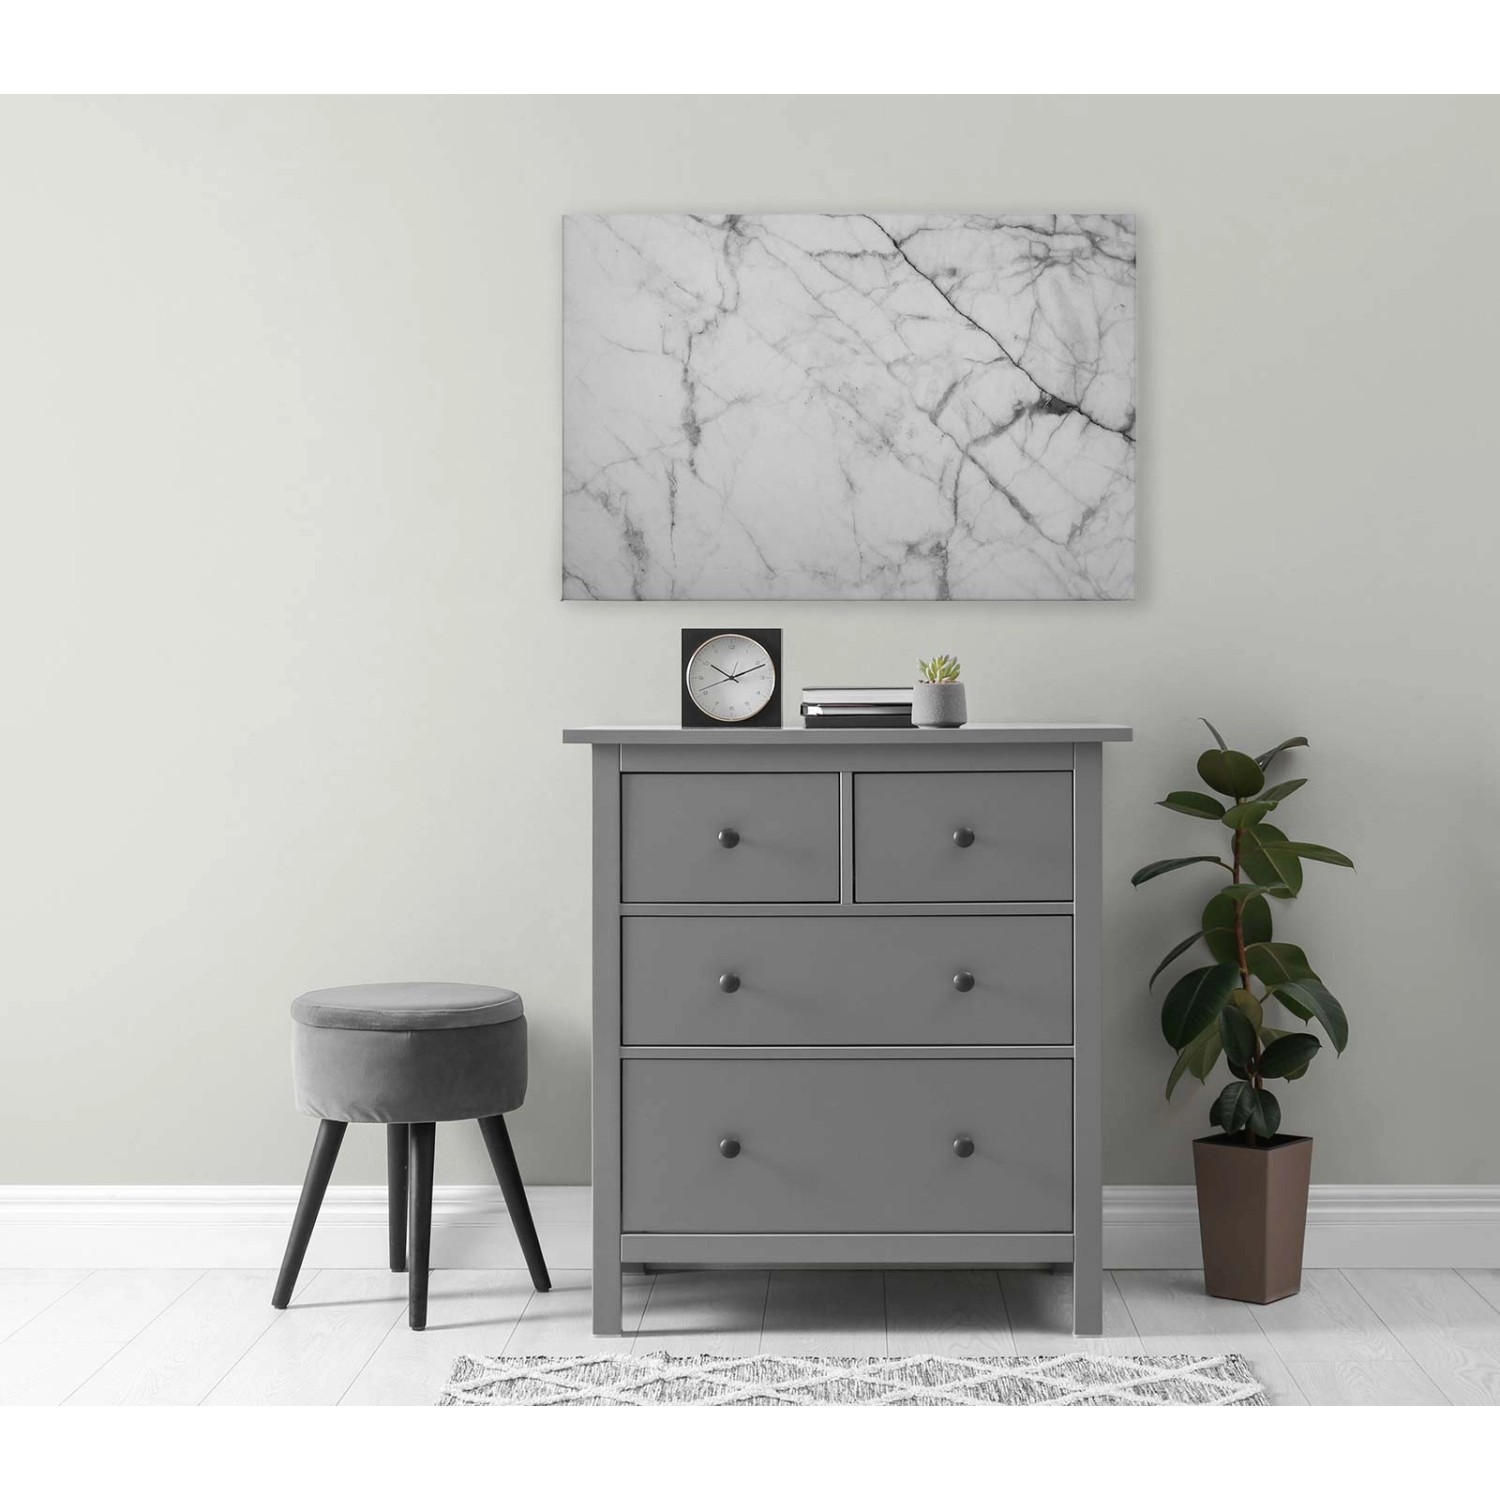 Bricoflor Bild Marmor Optik Weiß Grau Wandbild Elegant Für Badezimmer Und Schlafzimmer Leinwandbild Marmoroptik In 90 X 